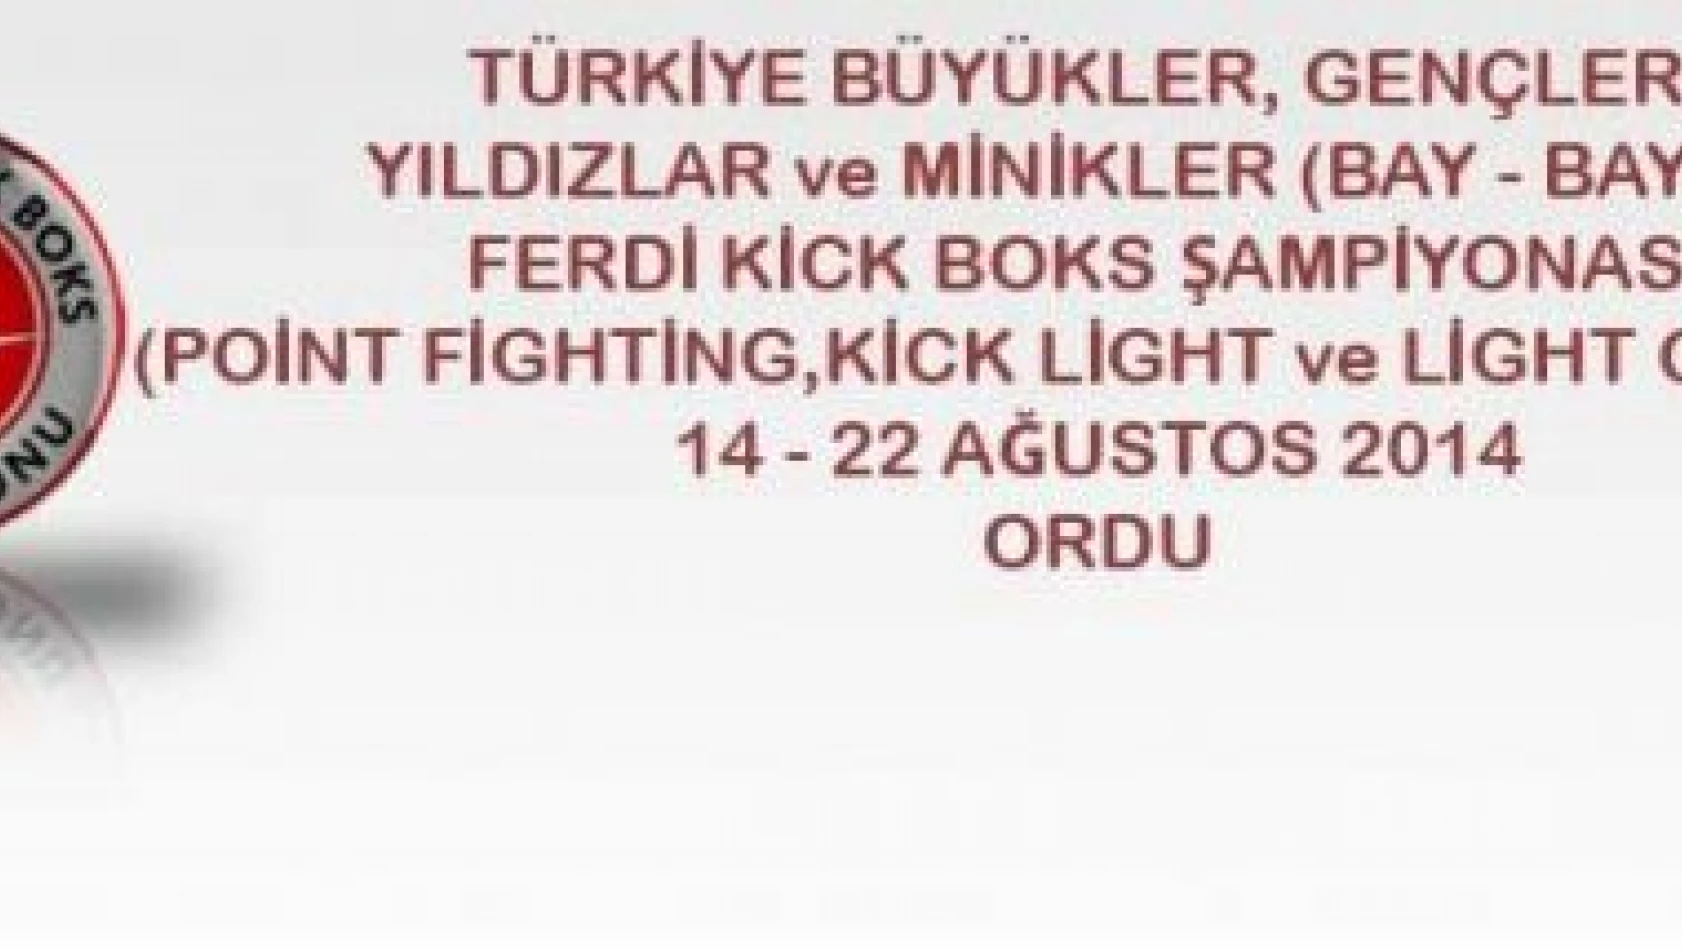 Türkiye Büyükler, Gençler, Yıldızlar ve Minikler Kick Boks Şampiyonası